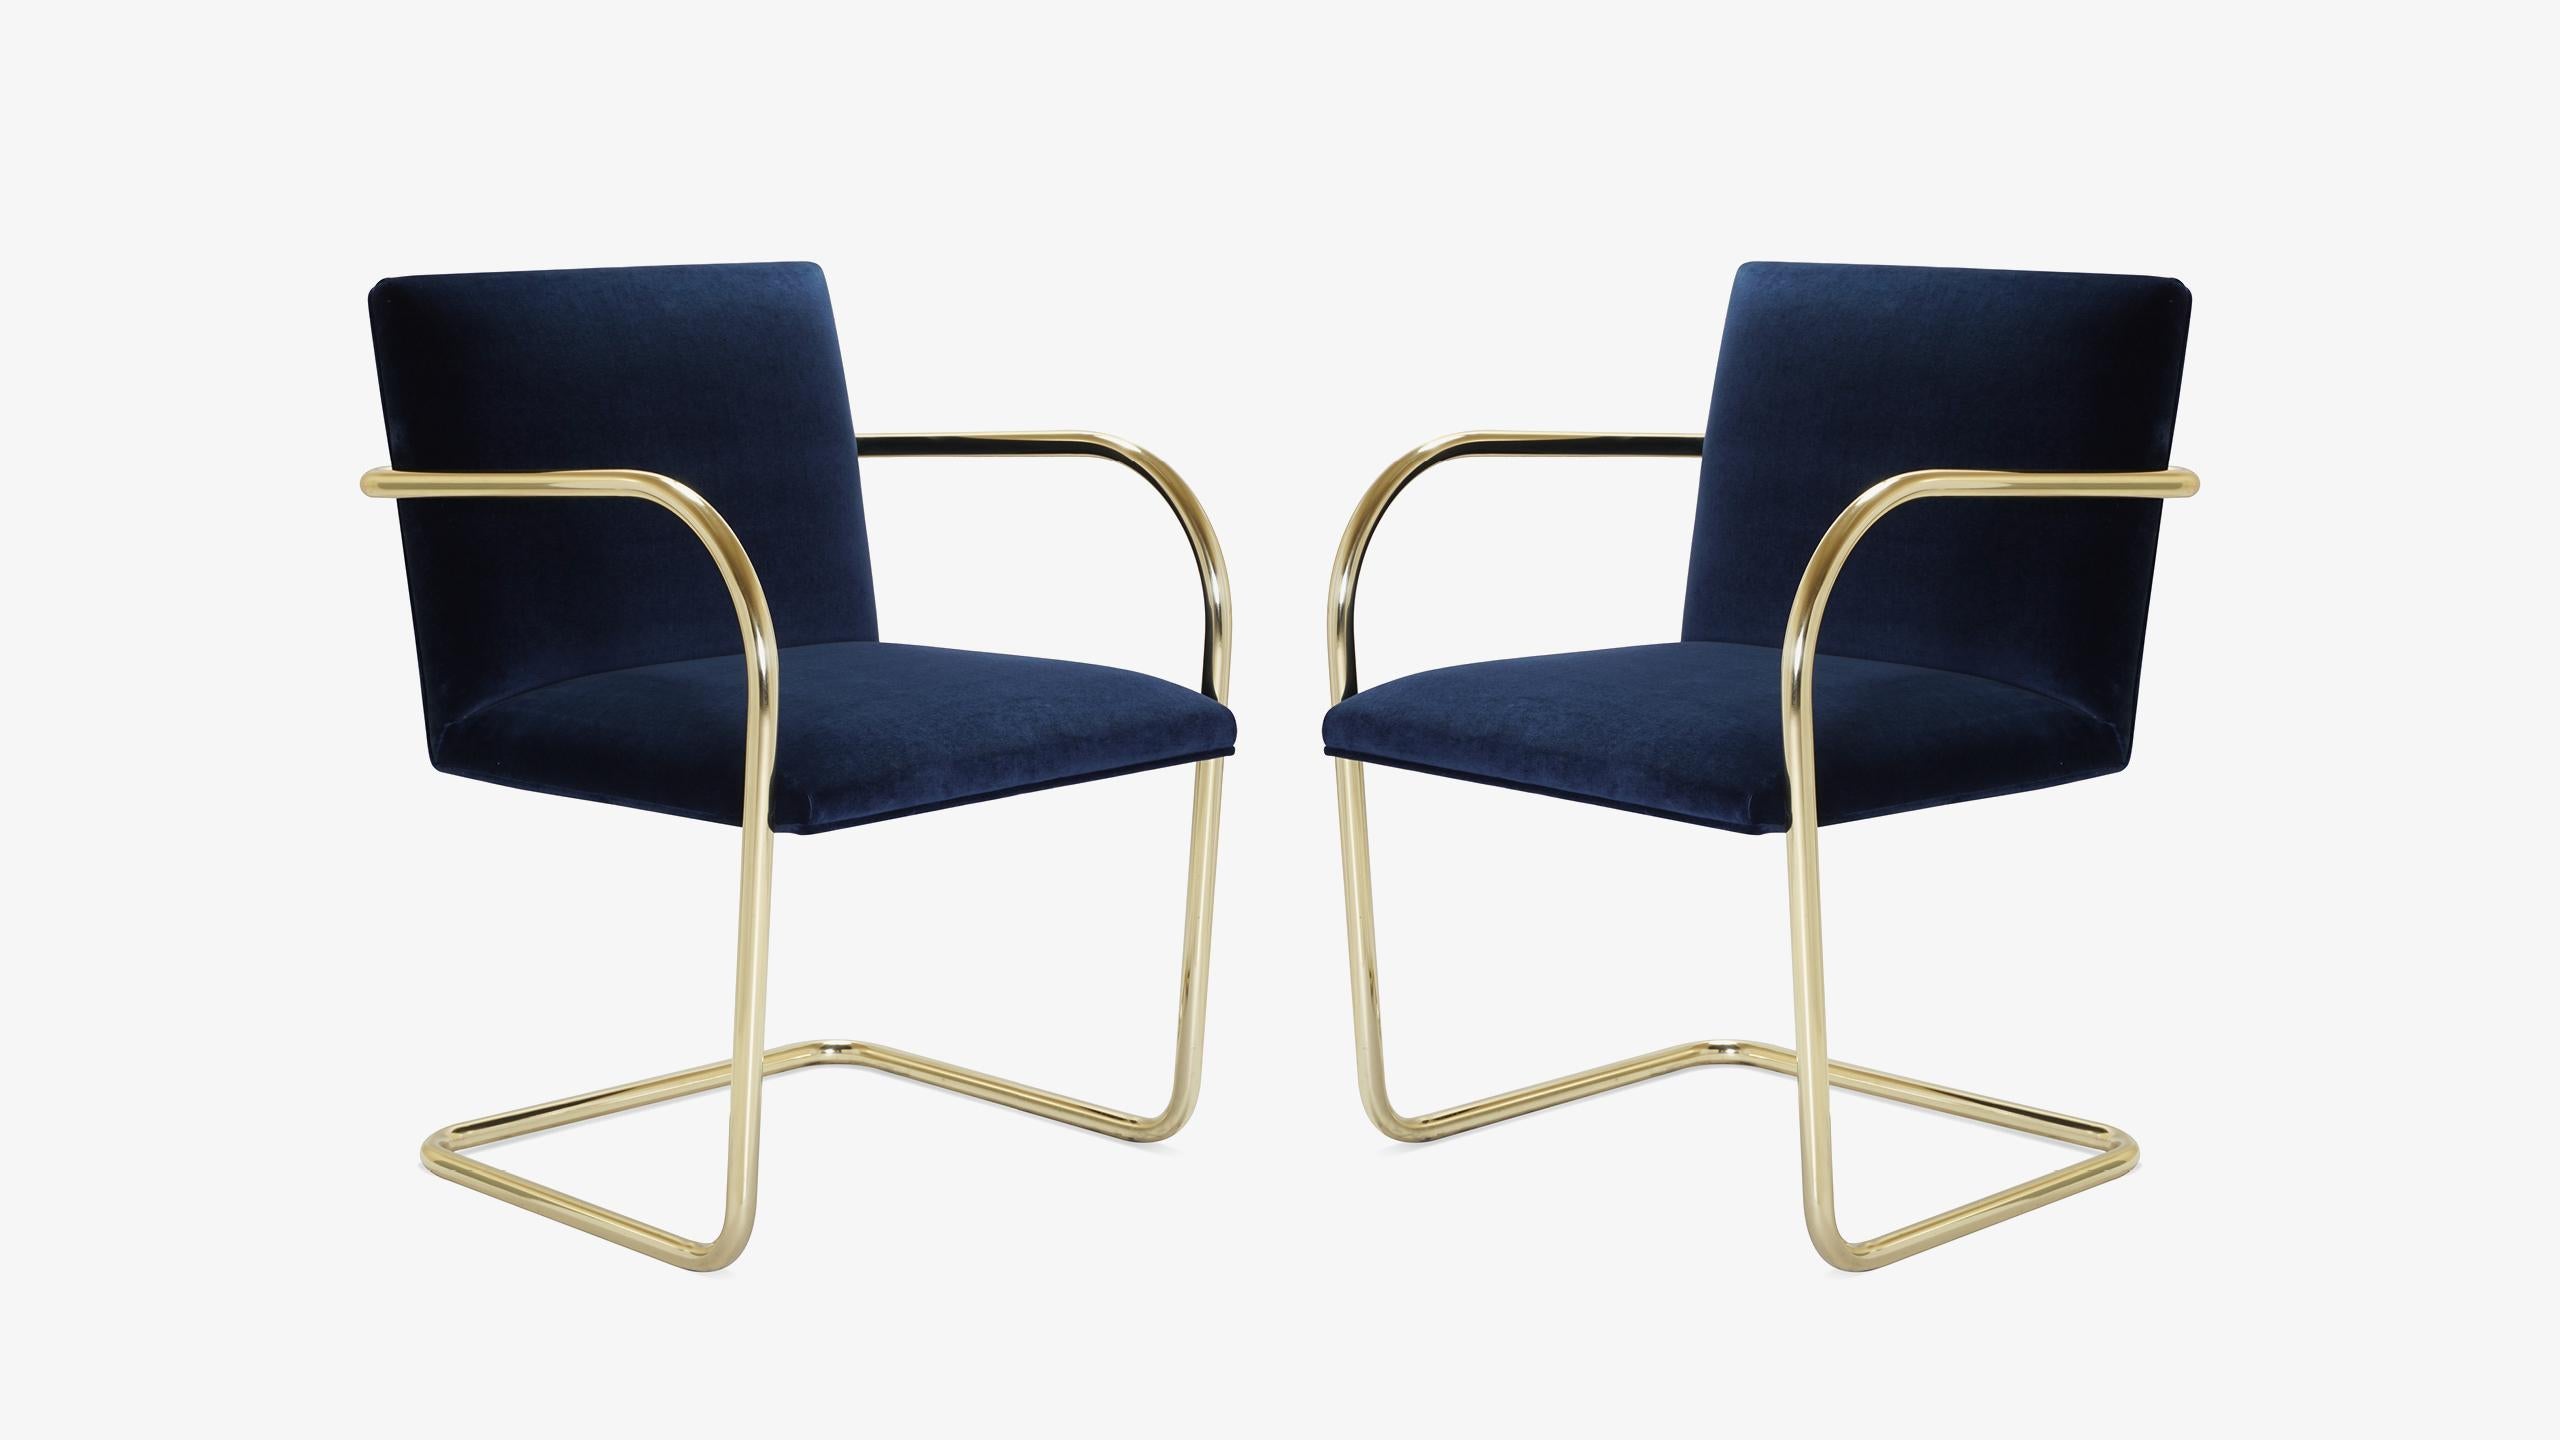 La définition du minimalisme dans un design singulier, réalisé par le grand Ludwig Mies van der Rohe en 1929 ; la chaise Brno Flat-Bar Chair est exactement cela. Nous avons édité ces itérations contemporaines d'authentiques originaux d'une manière